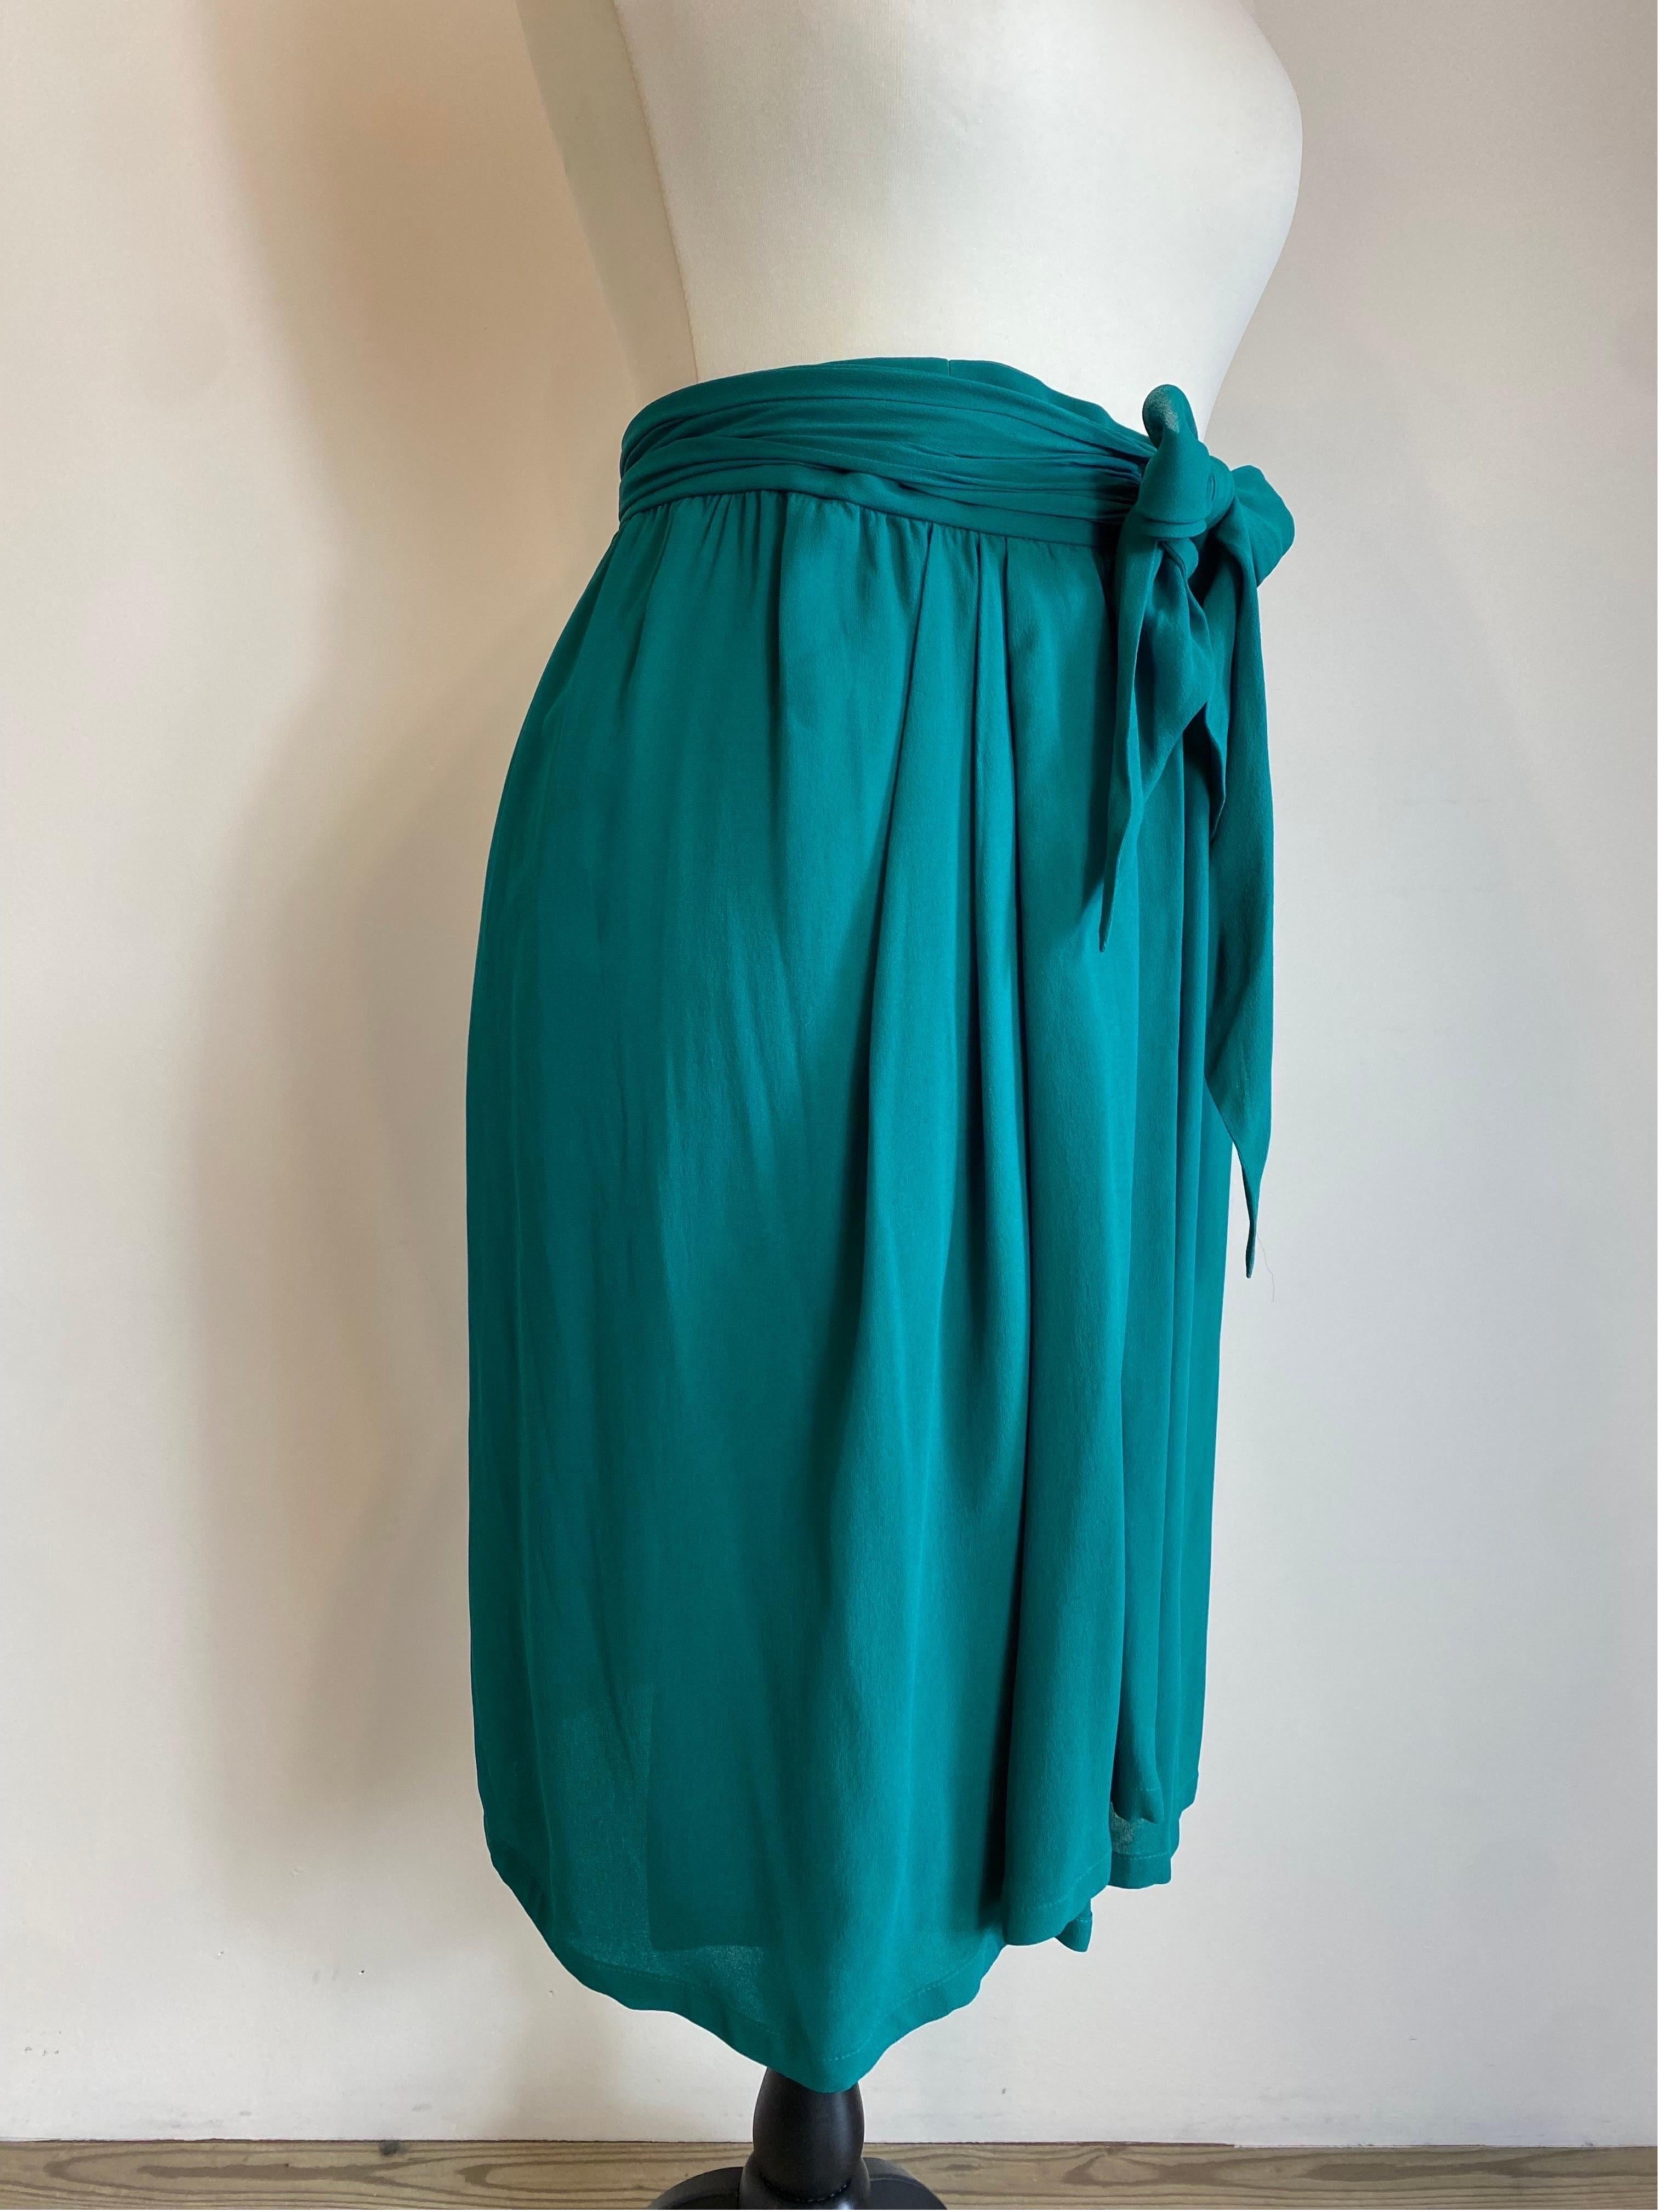 Yves Saint Laurent Vintage Emerald Green Skirt For Sale 2